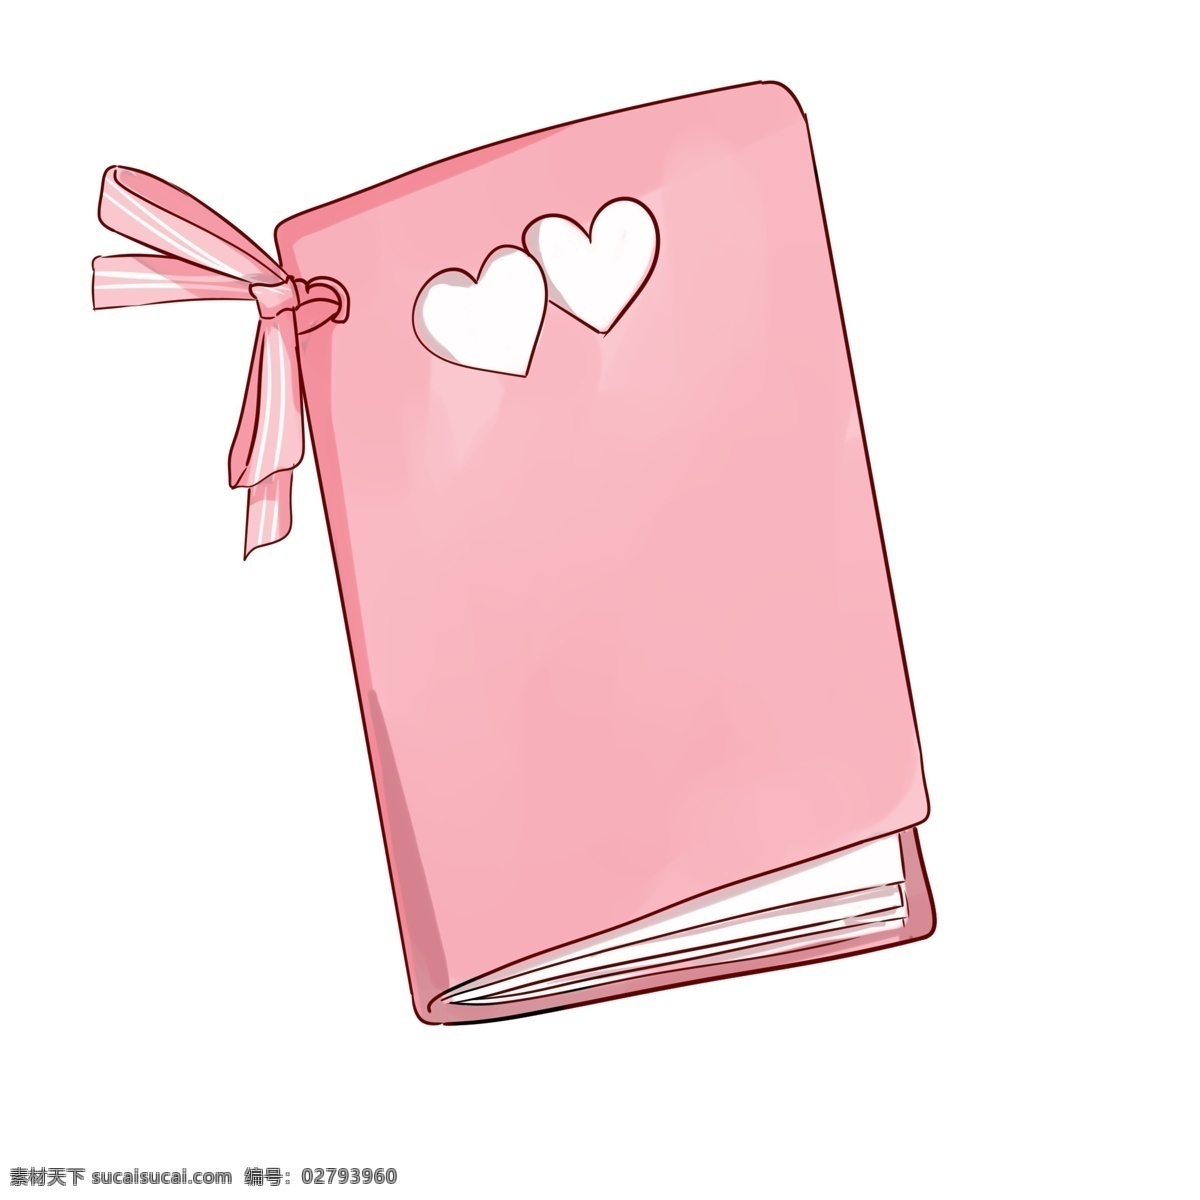 粉色 浪漫 爱心 日记本 手绘 卡通 粉色日记本 丝带 爱心笔记本 手绘日记本 笔记本 卡通笔记本